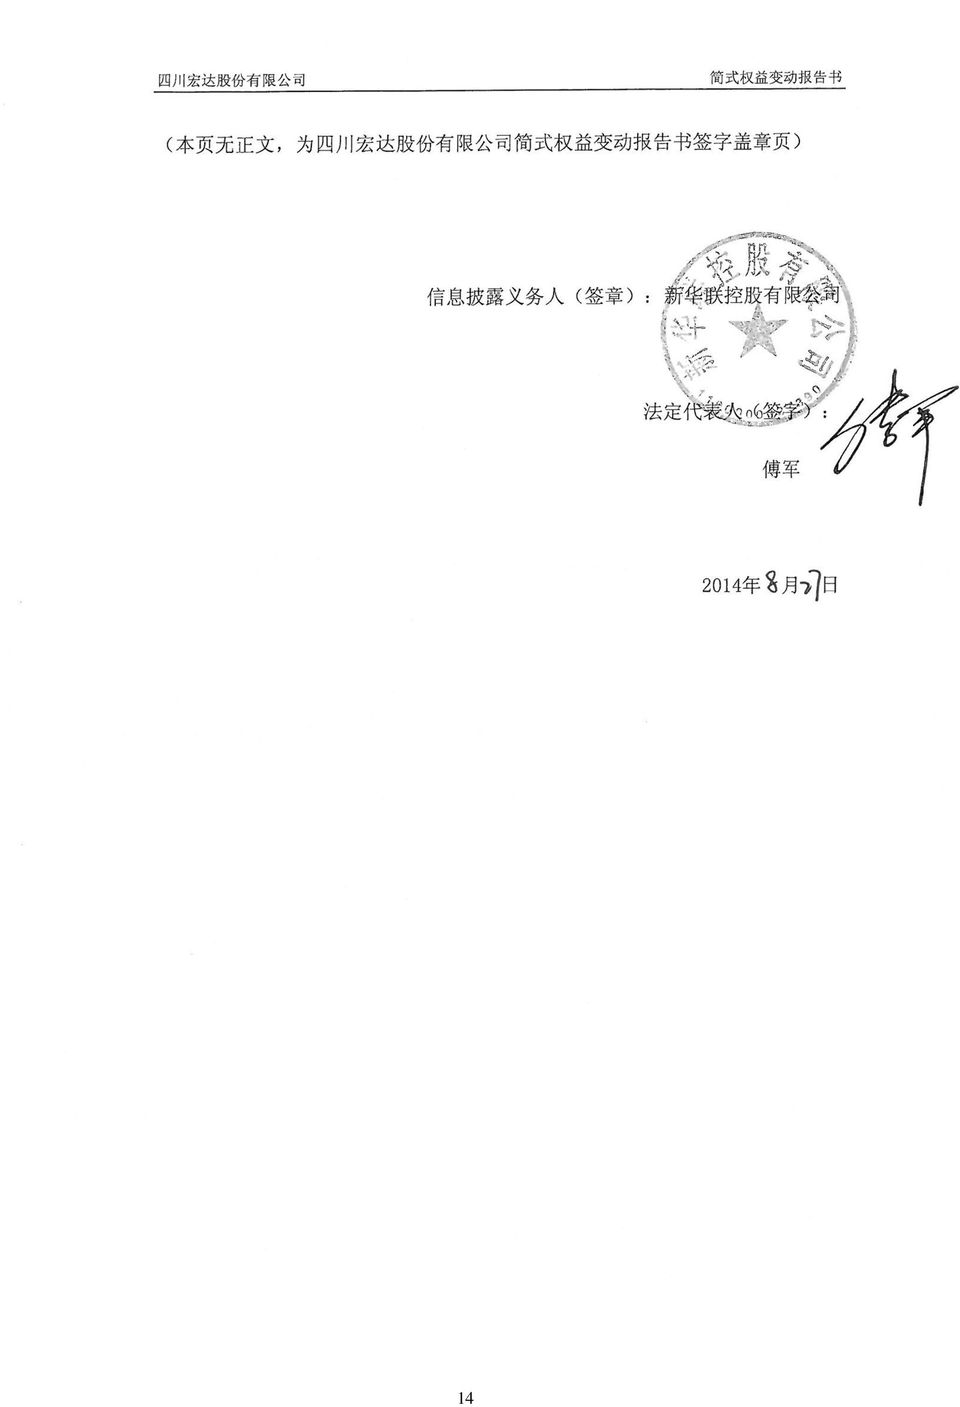 章 ): 新 华 联 控 股 有 限 公 司 法 定 代 表 人